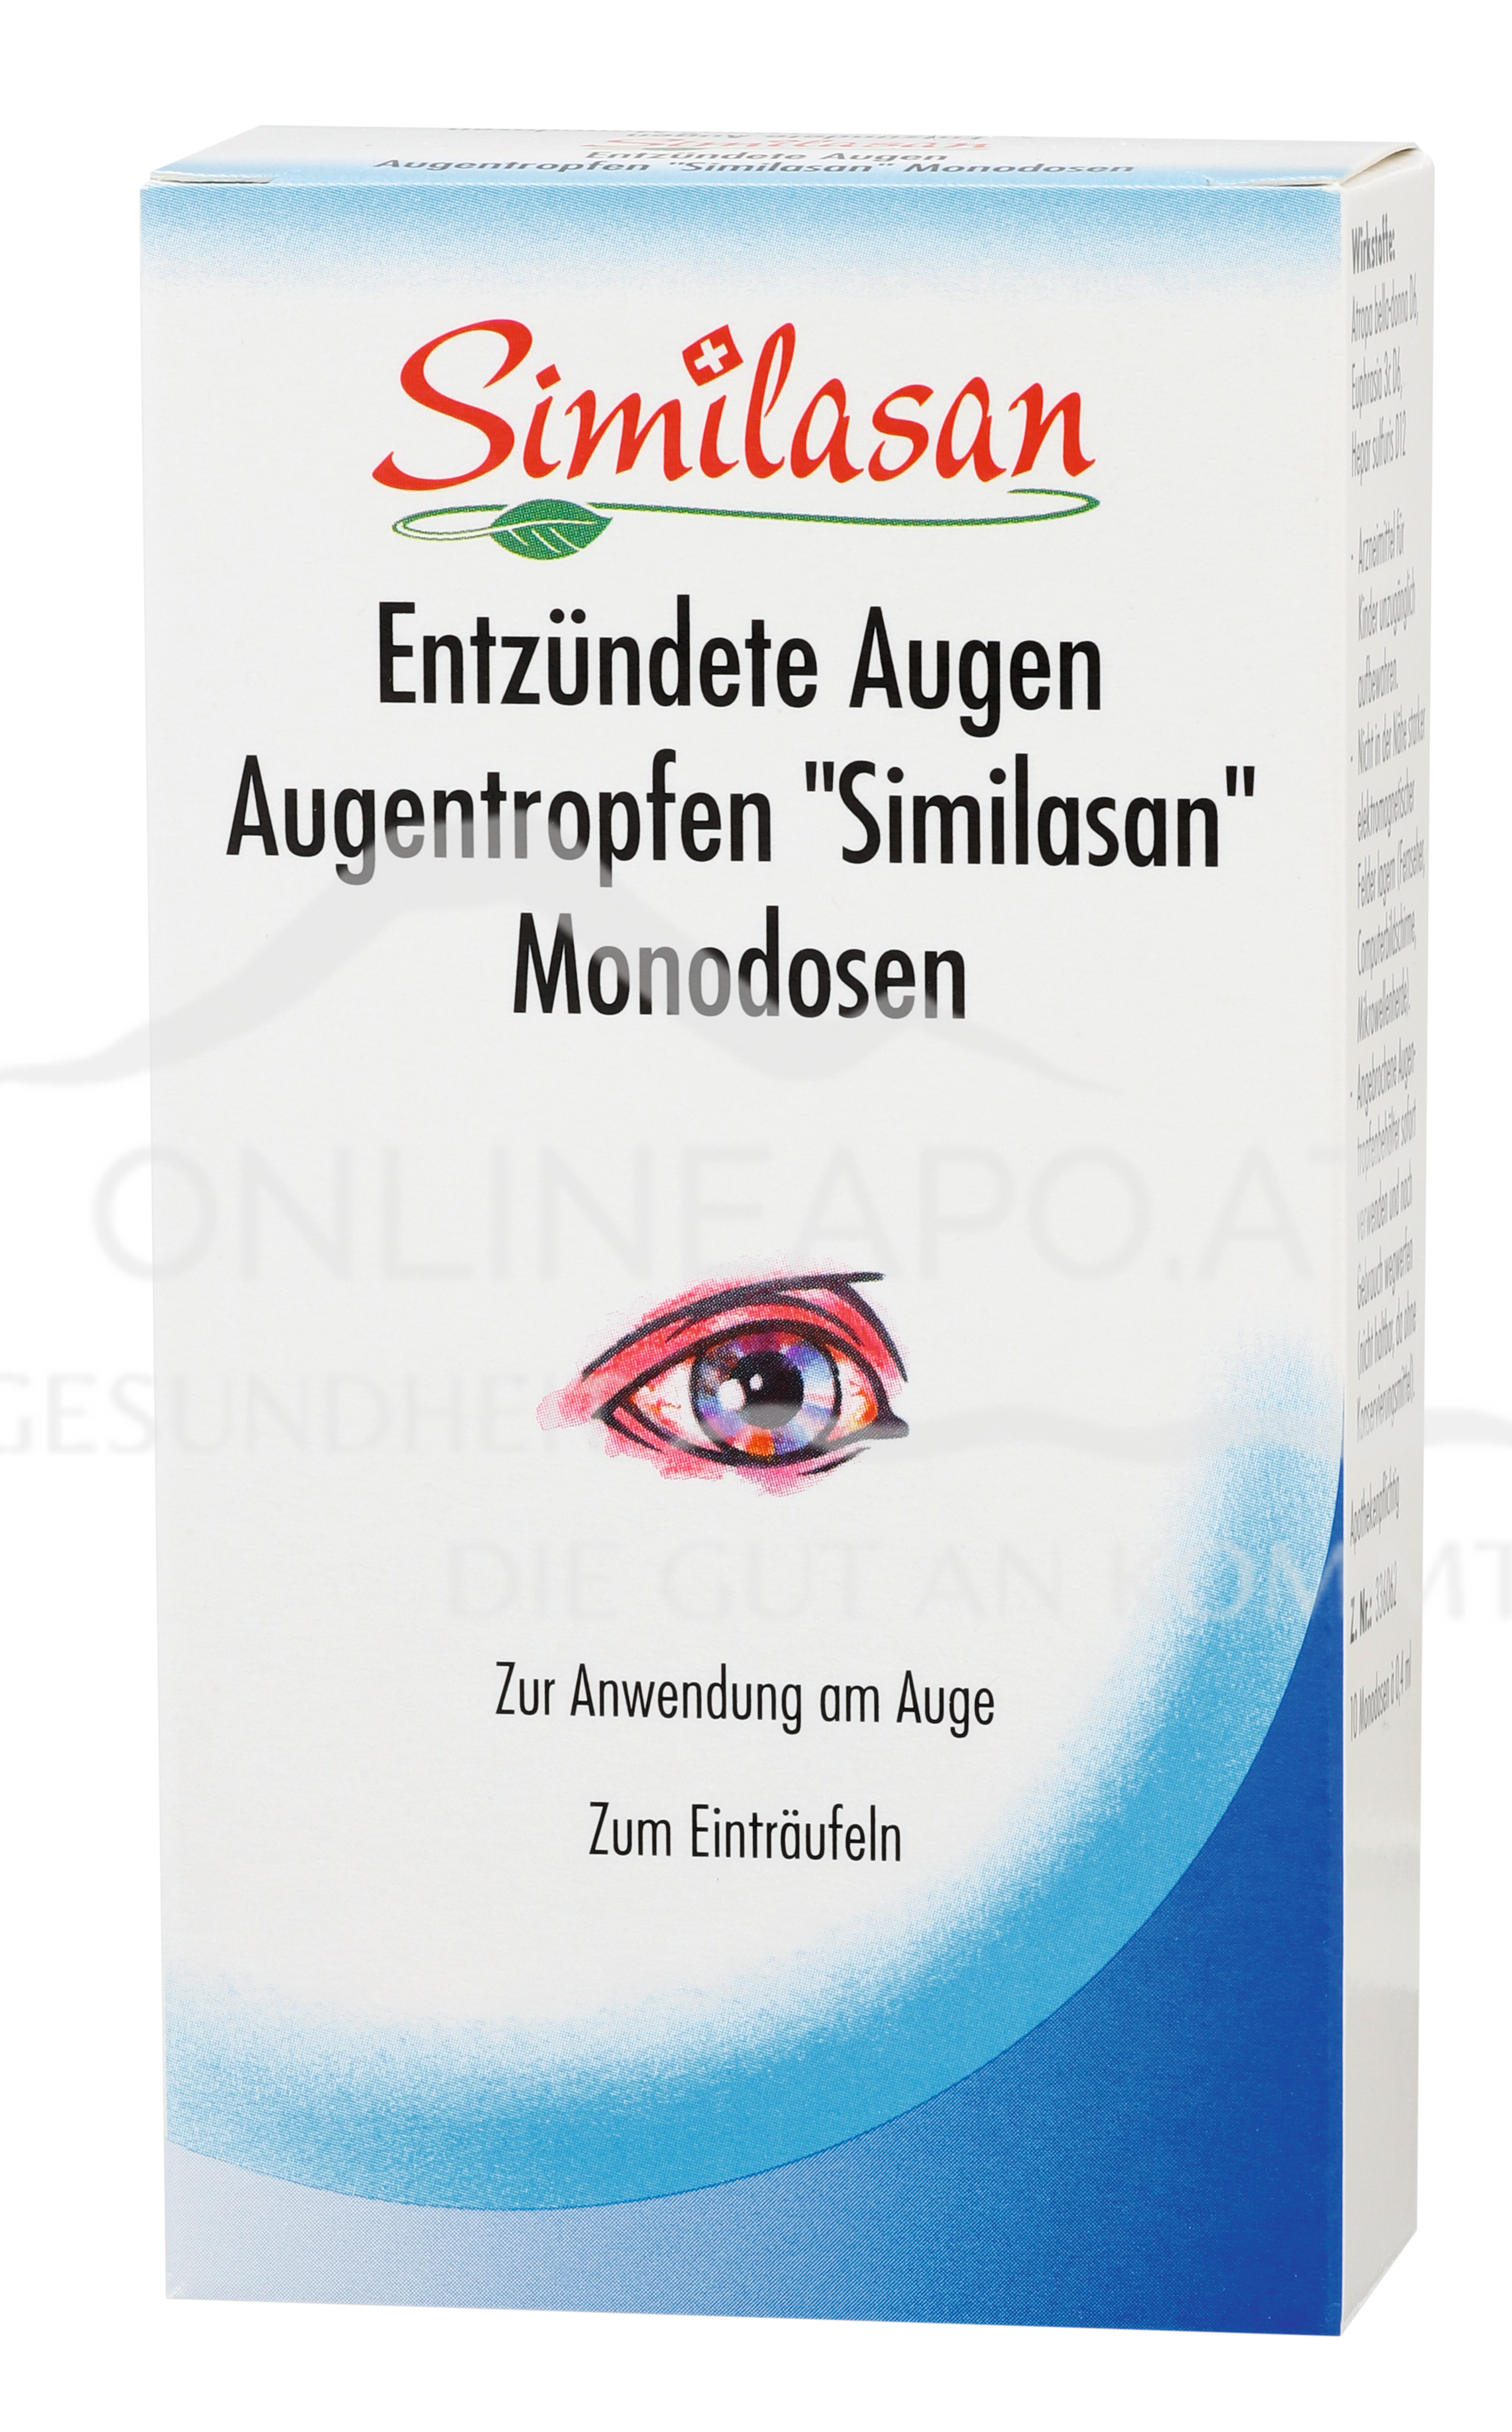 Similasan Entzündete Augen Augentropfen Monodosen 0,4 ml